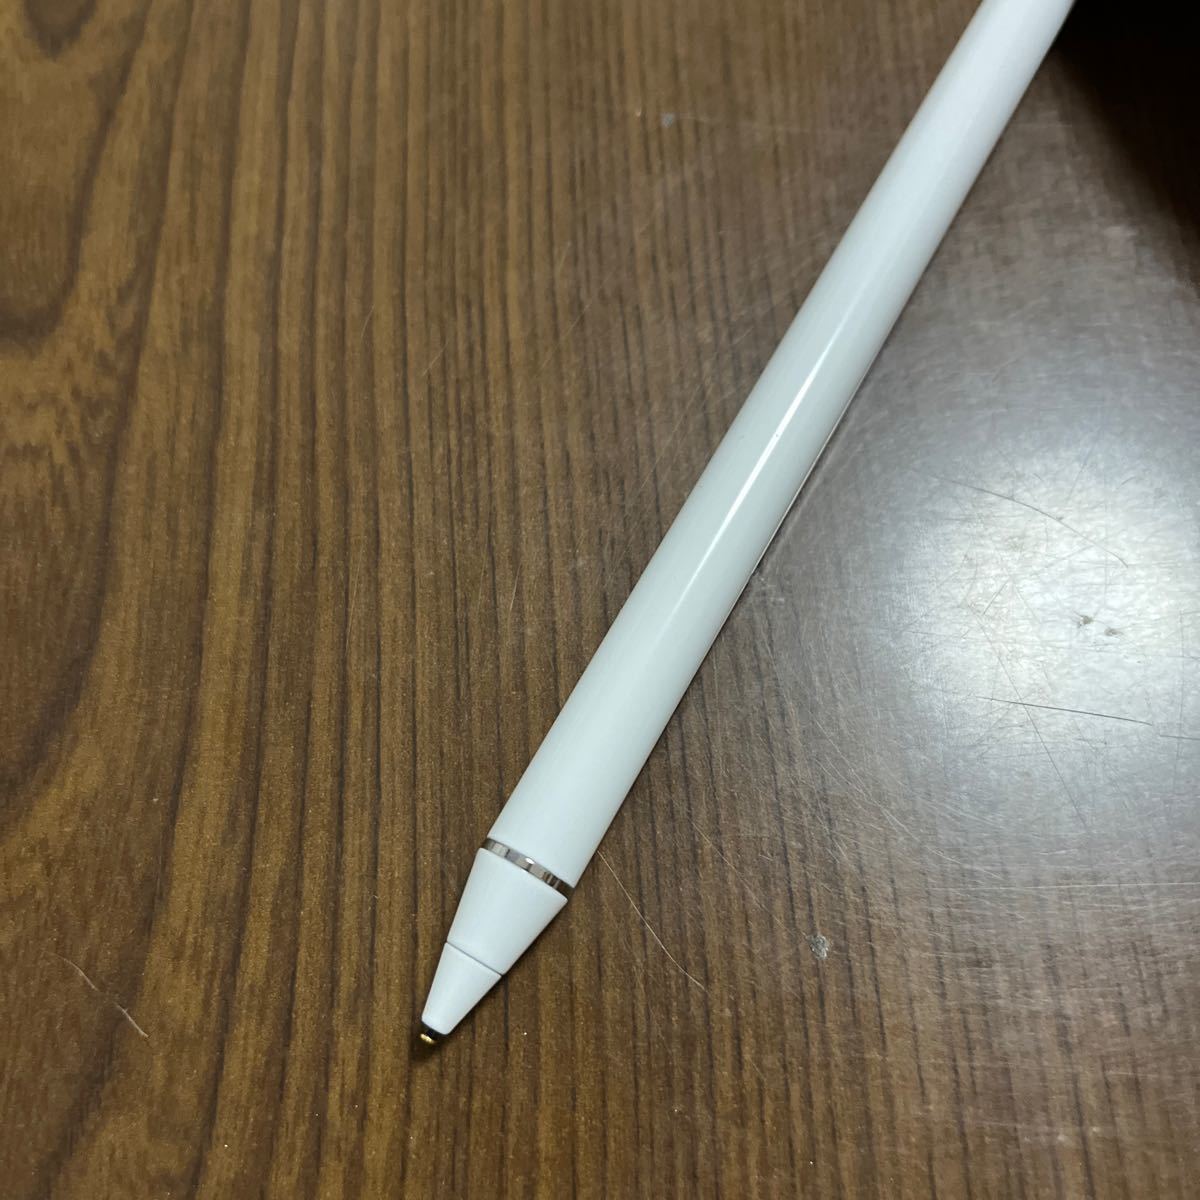 511p2708☆ タッチペン Sofun スタイラスペン スマートフォン対応 iPadペン 極細 超高感度 たっちぺん USB充電式 高精度